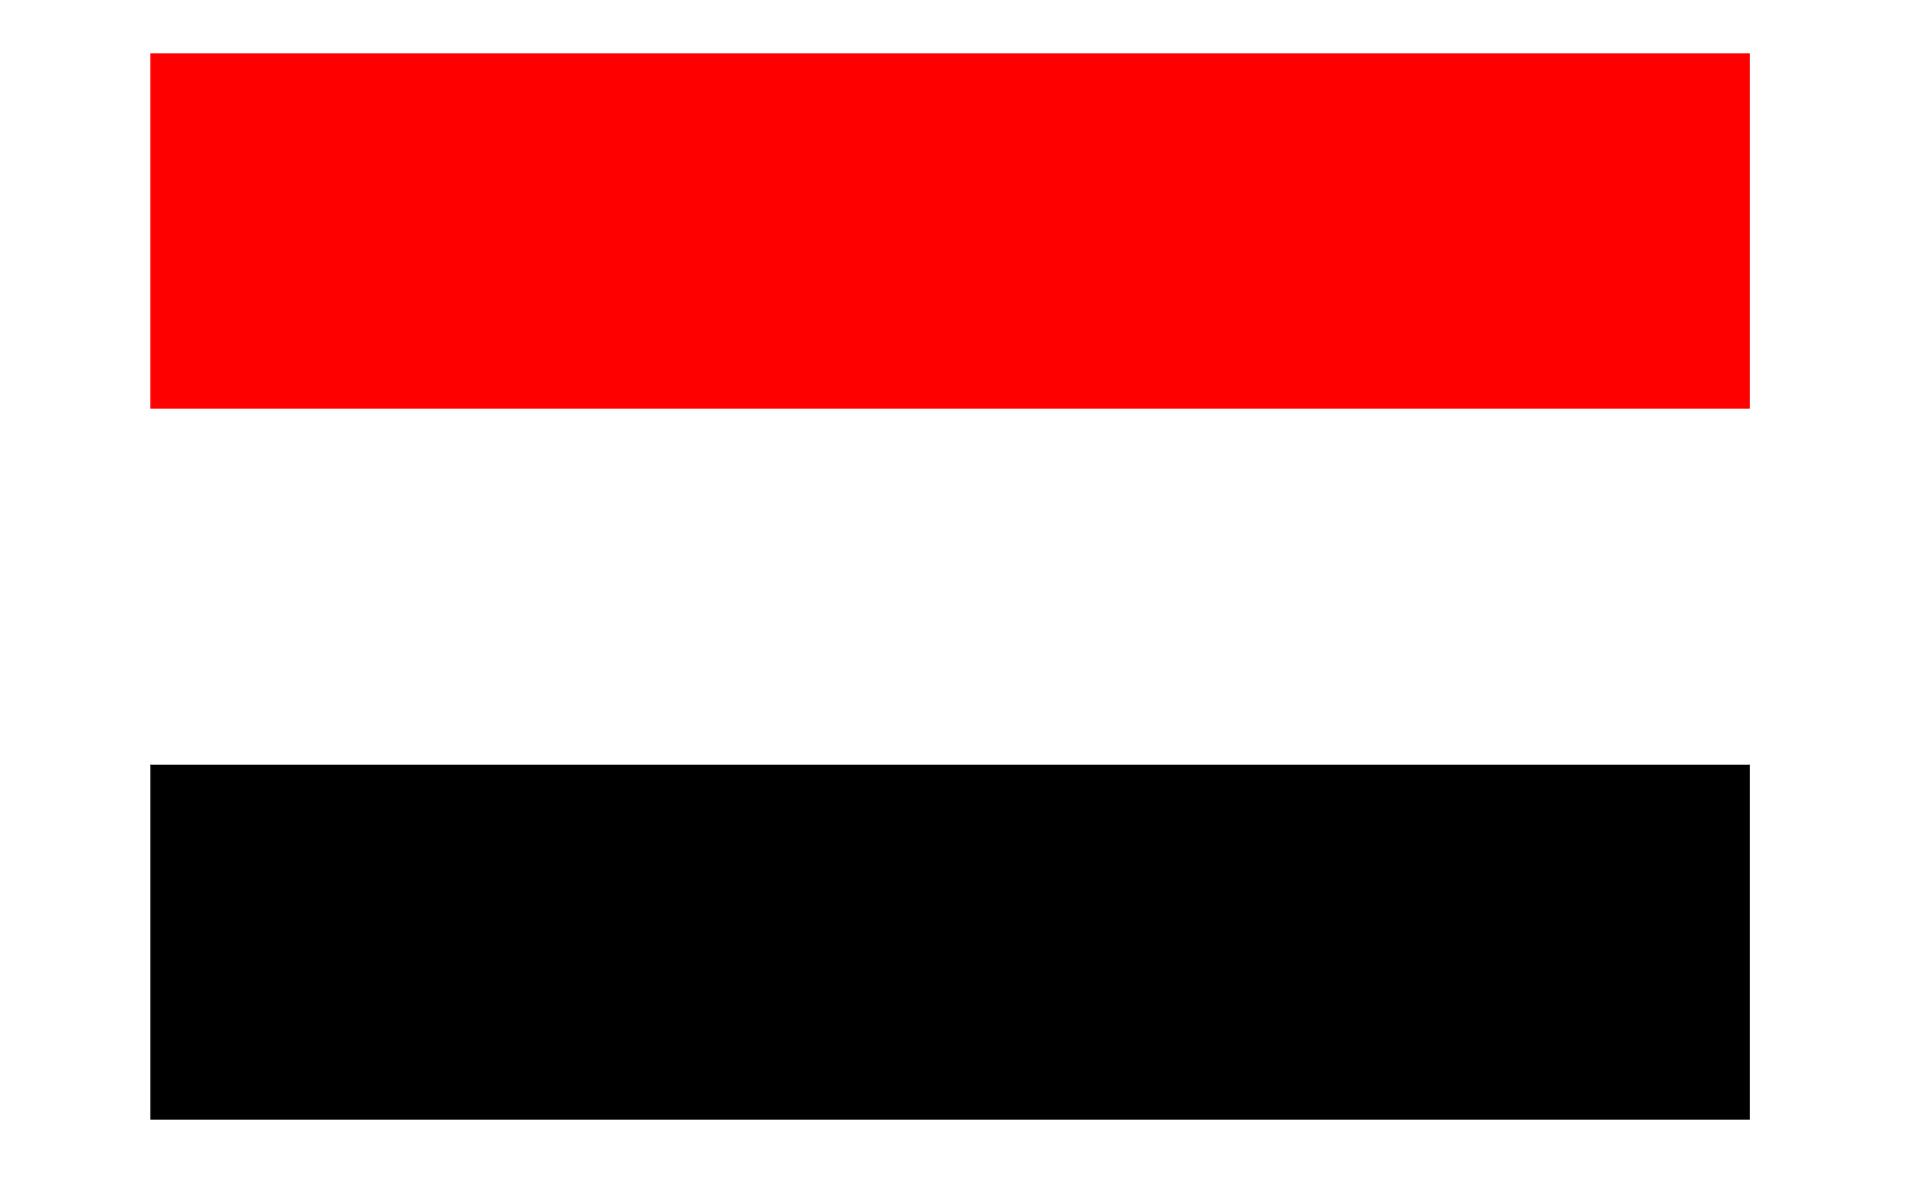 也门国旗是一面红白黑三色横条组成的旗帜1990年5月22日启用